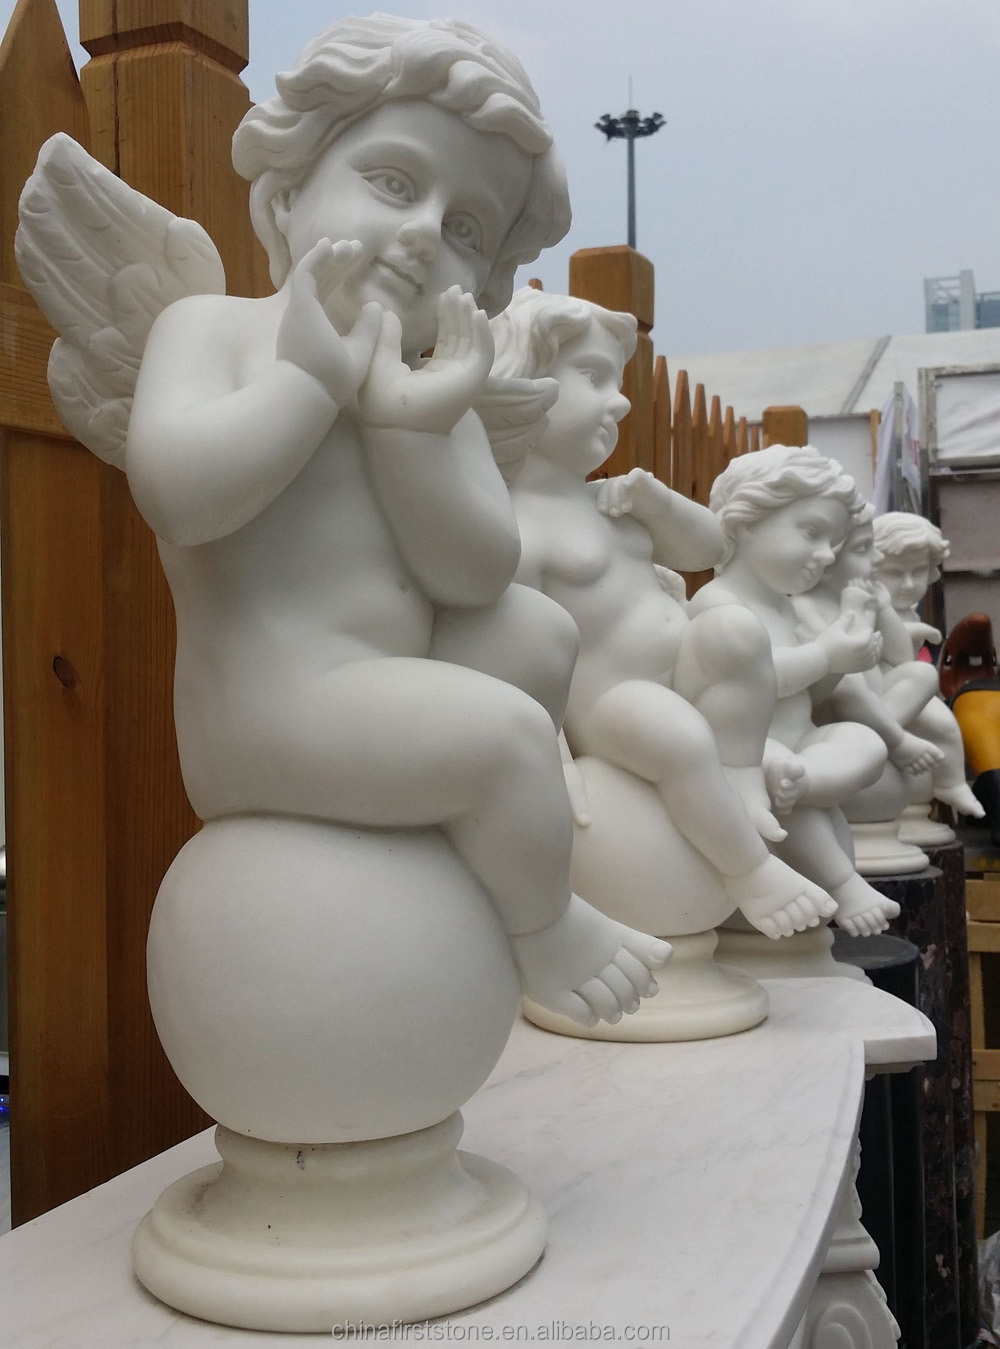  Angel Figurines